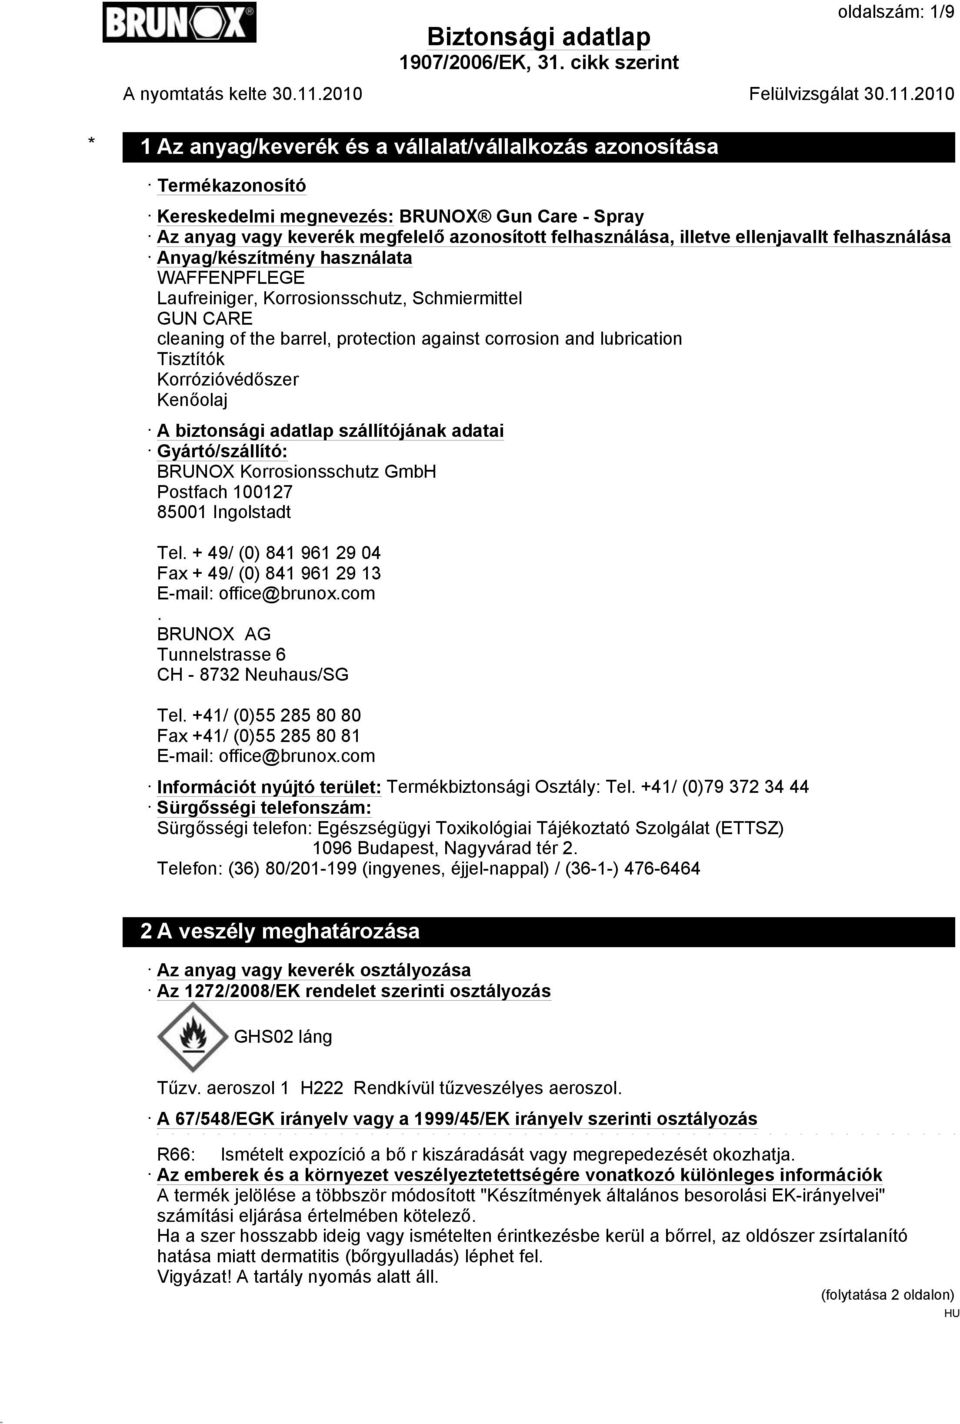 Tisztítók Korrózióvédőszer Kenőolaj A biztonsági adatlap szállítójának adatai Gyártó/szállító: BRUNOX Korrosionsschutz GmbH Postfach 100127 85001 Ingolstadt Tel.